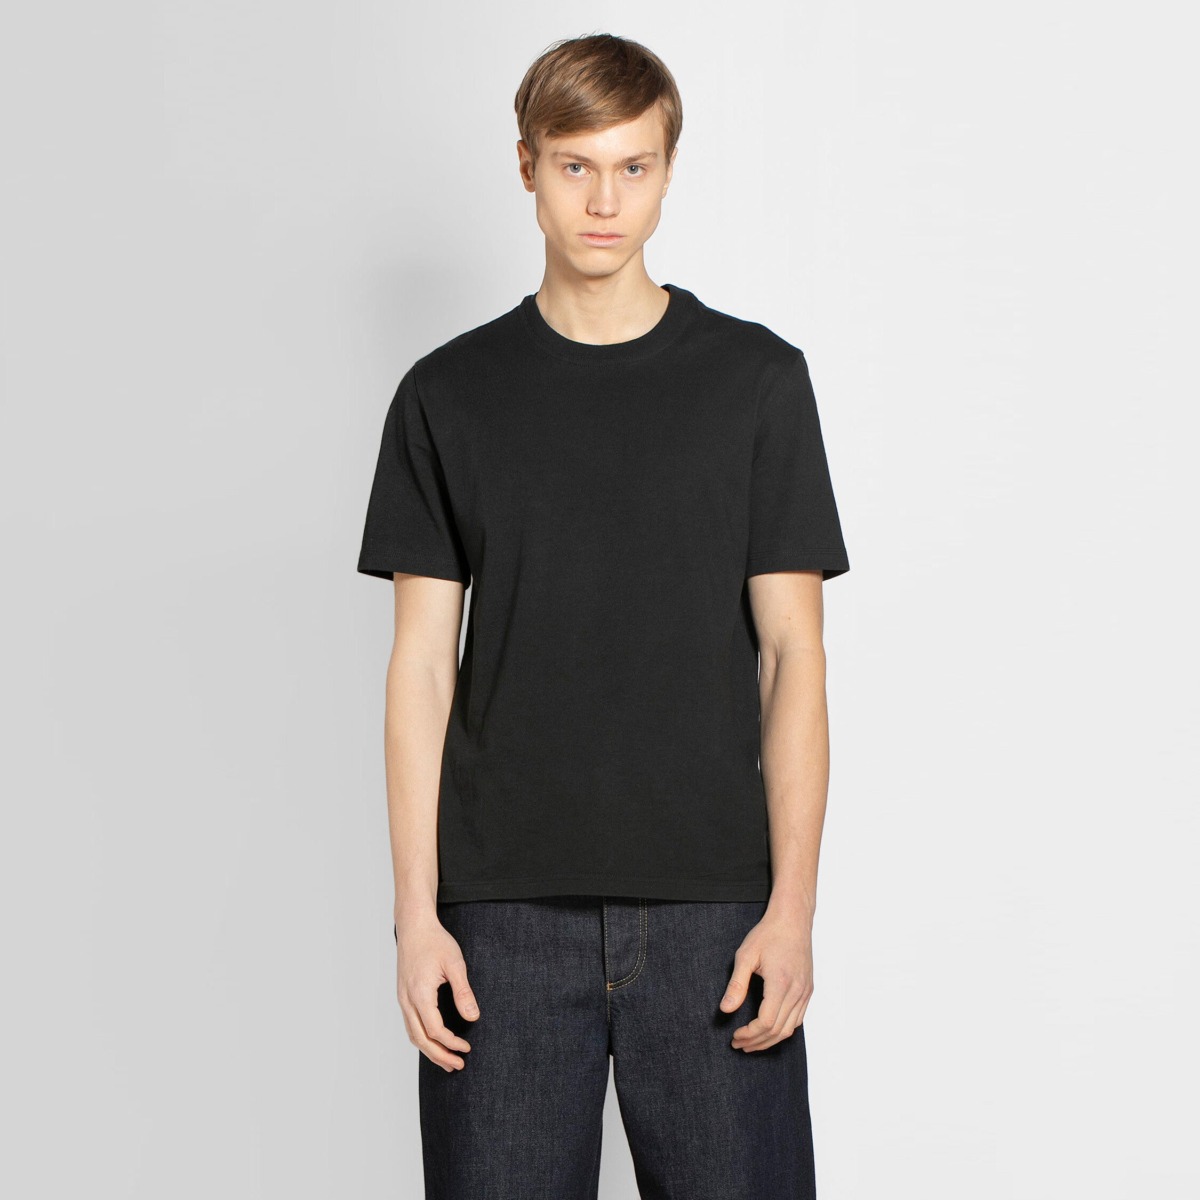 Gent Black T-Shirt - Bottega Veneta - Antonioli GOOFASH